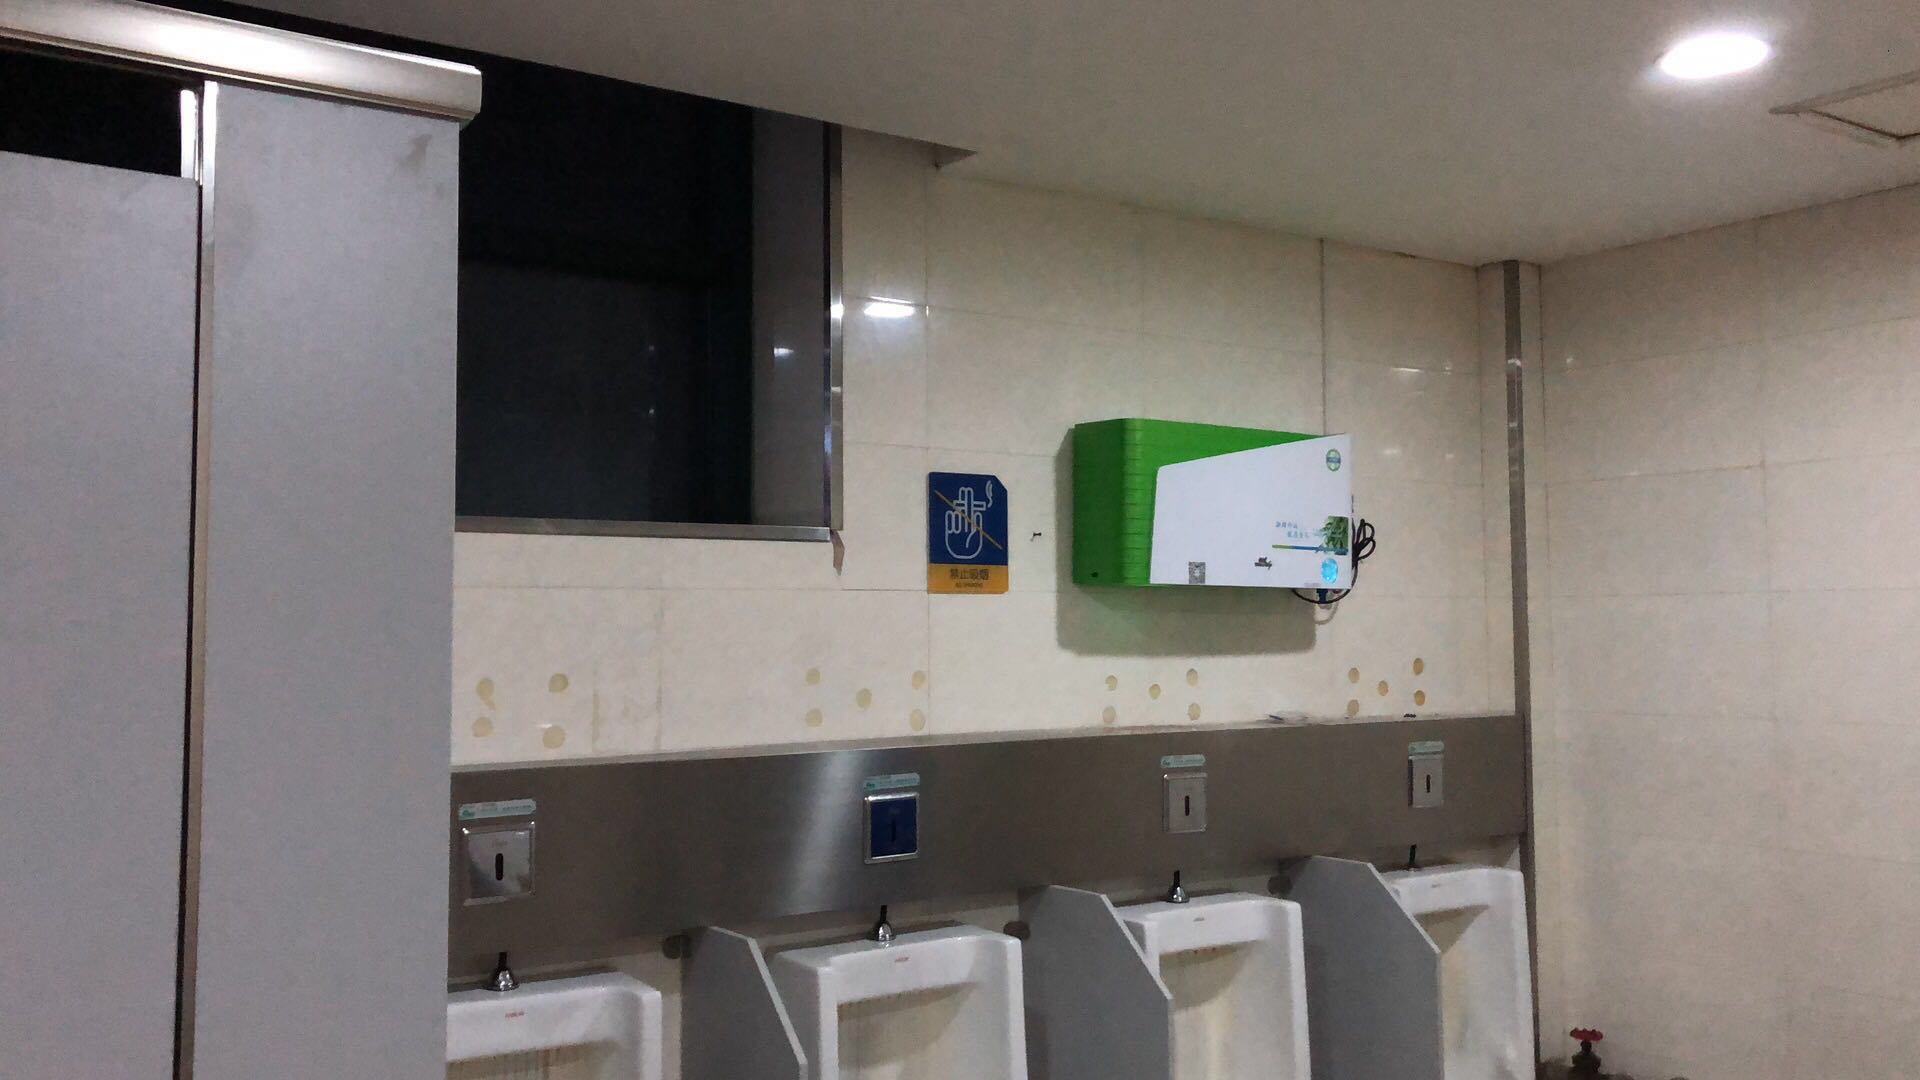 途炜科技智慧公厕系统平台智能公厕红绿灯有人无人指示牌 厕所信息展示屏幕新风除臭机